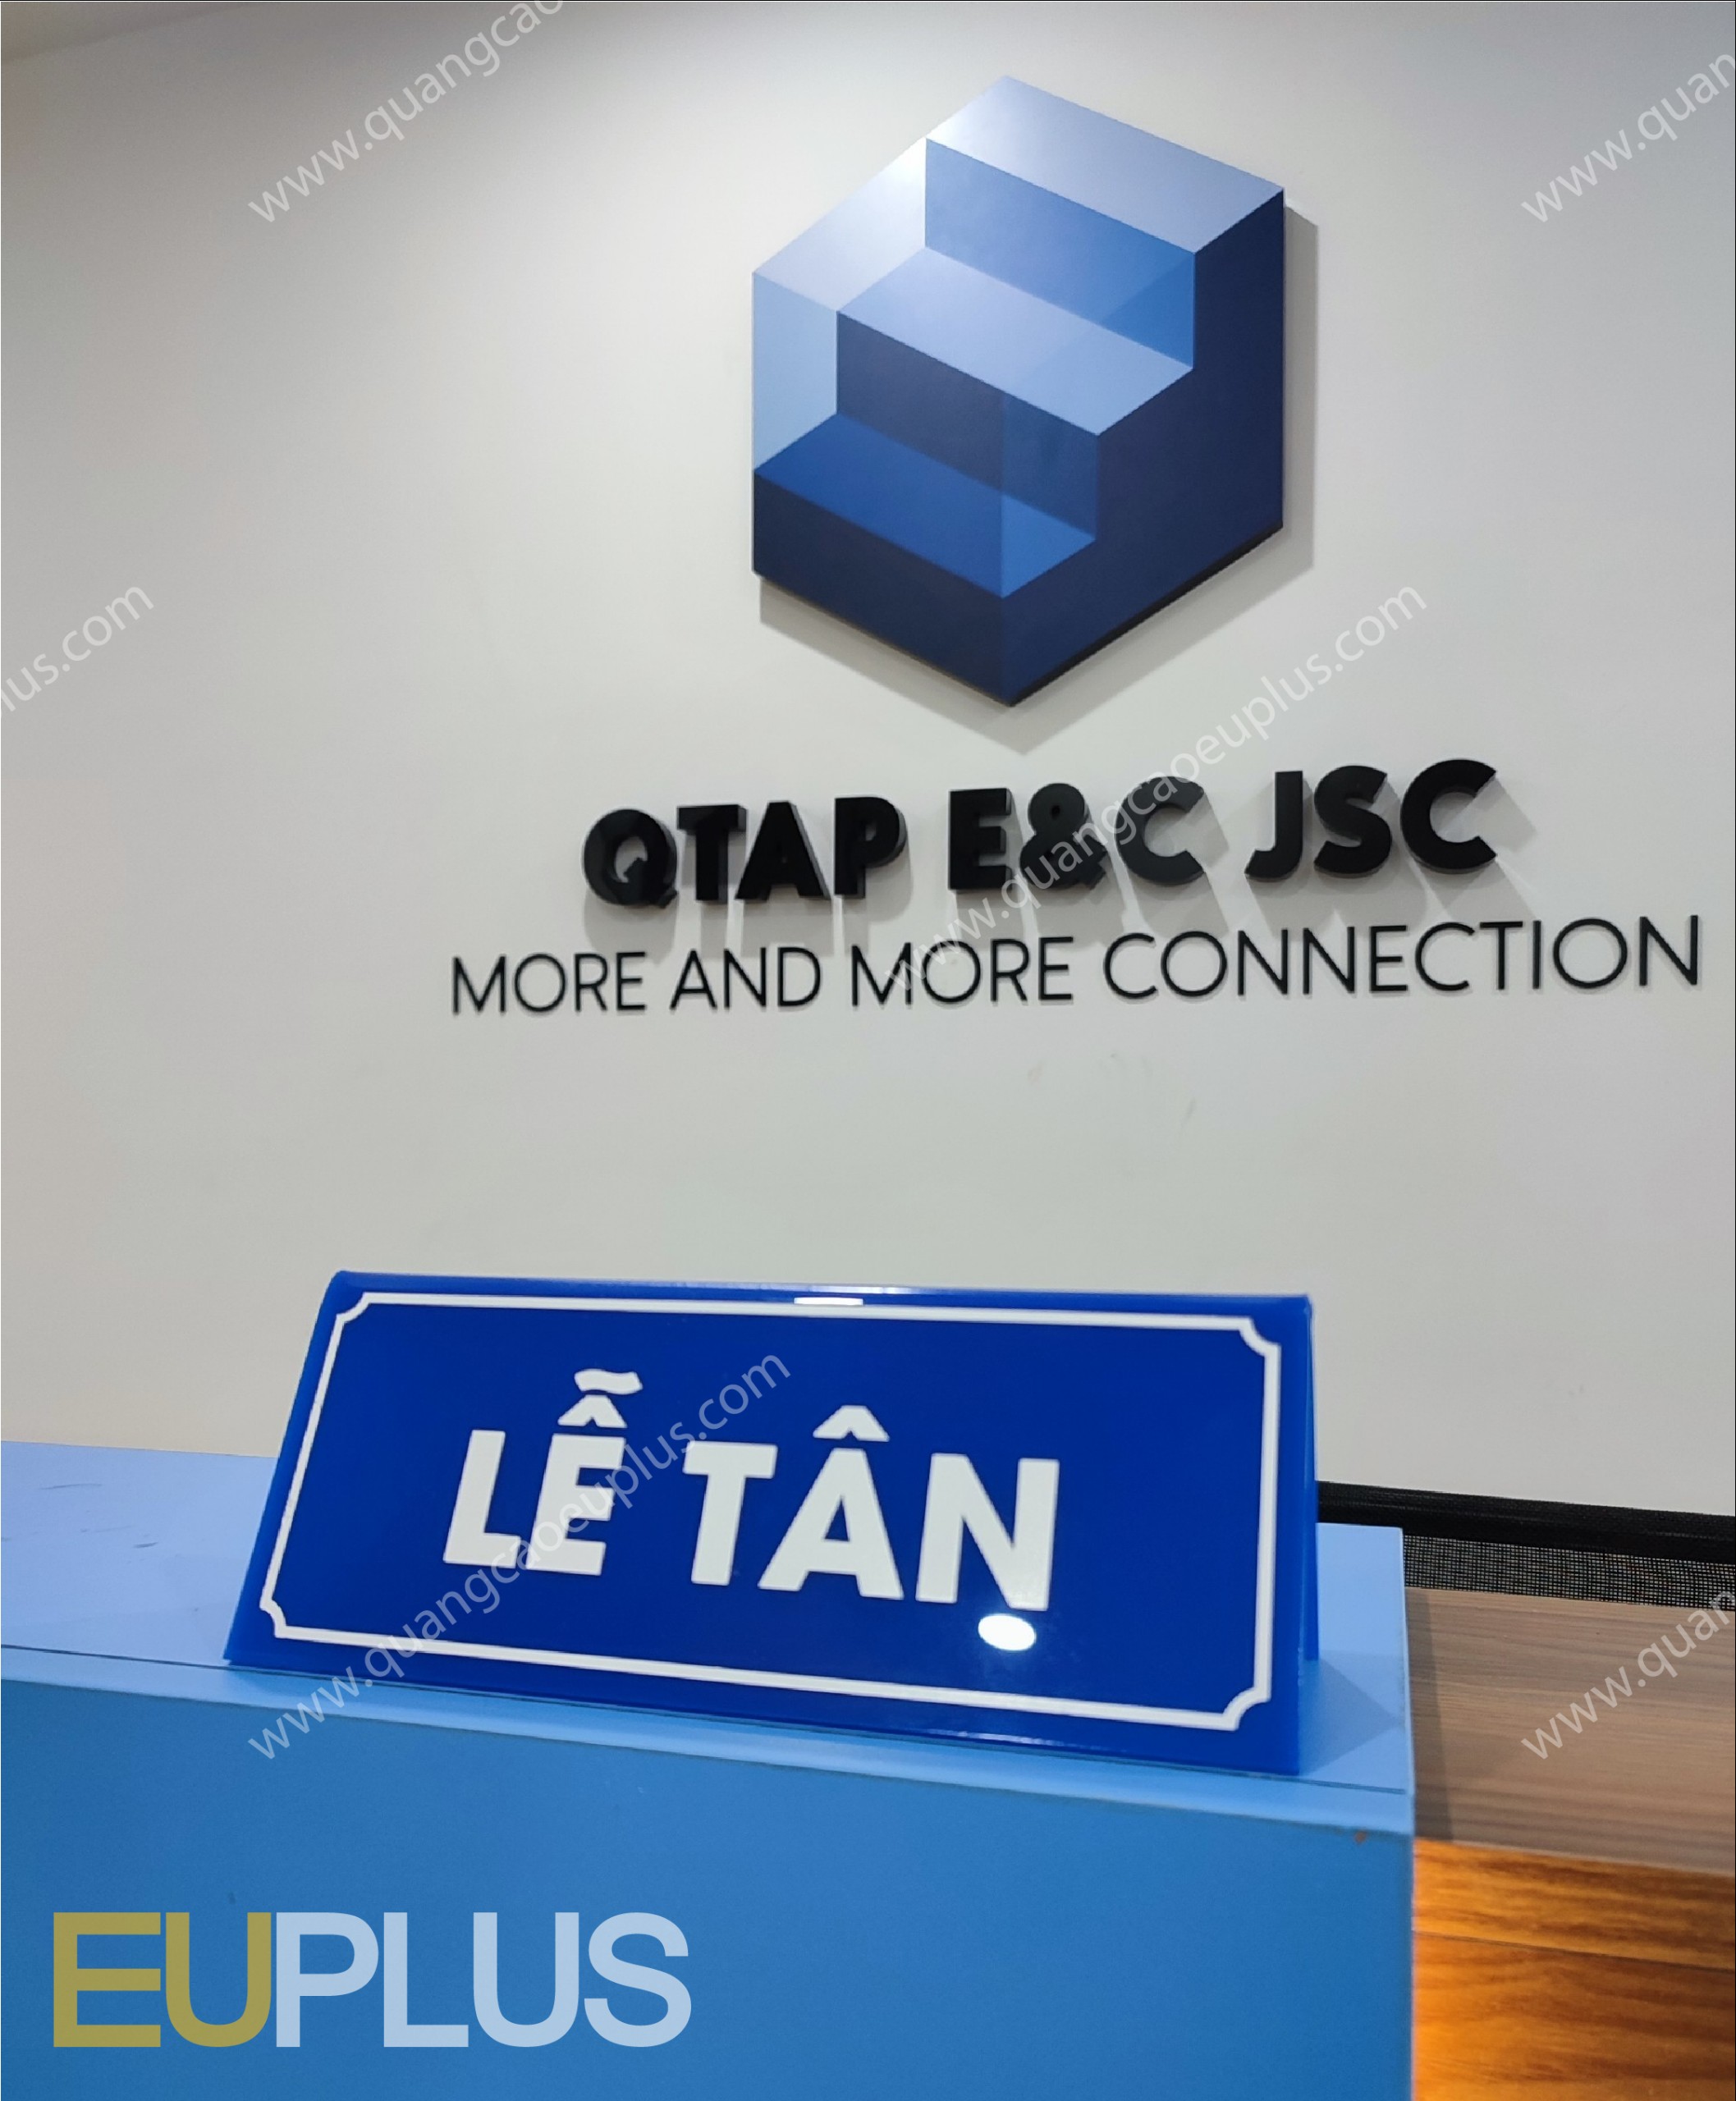 Logo văn phòng cty QTAP